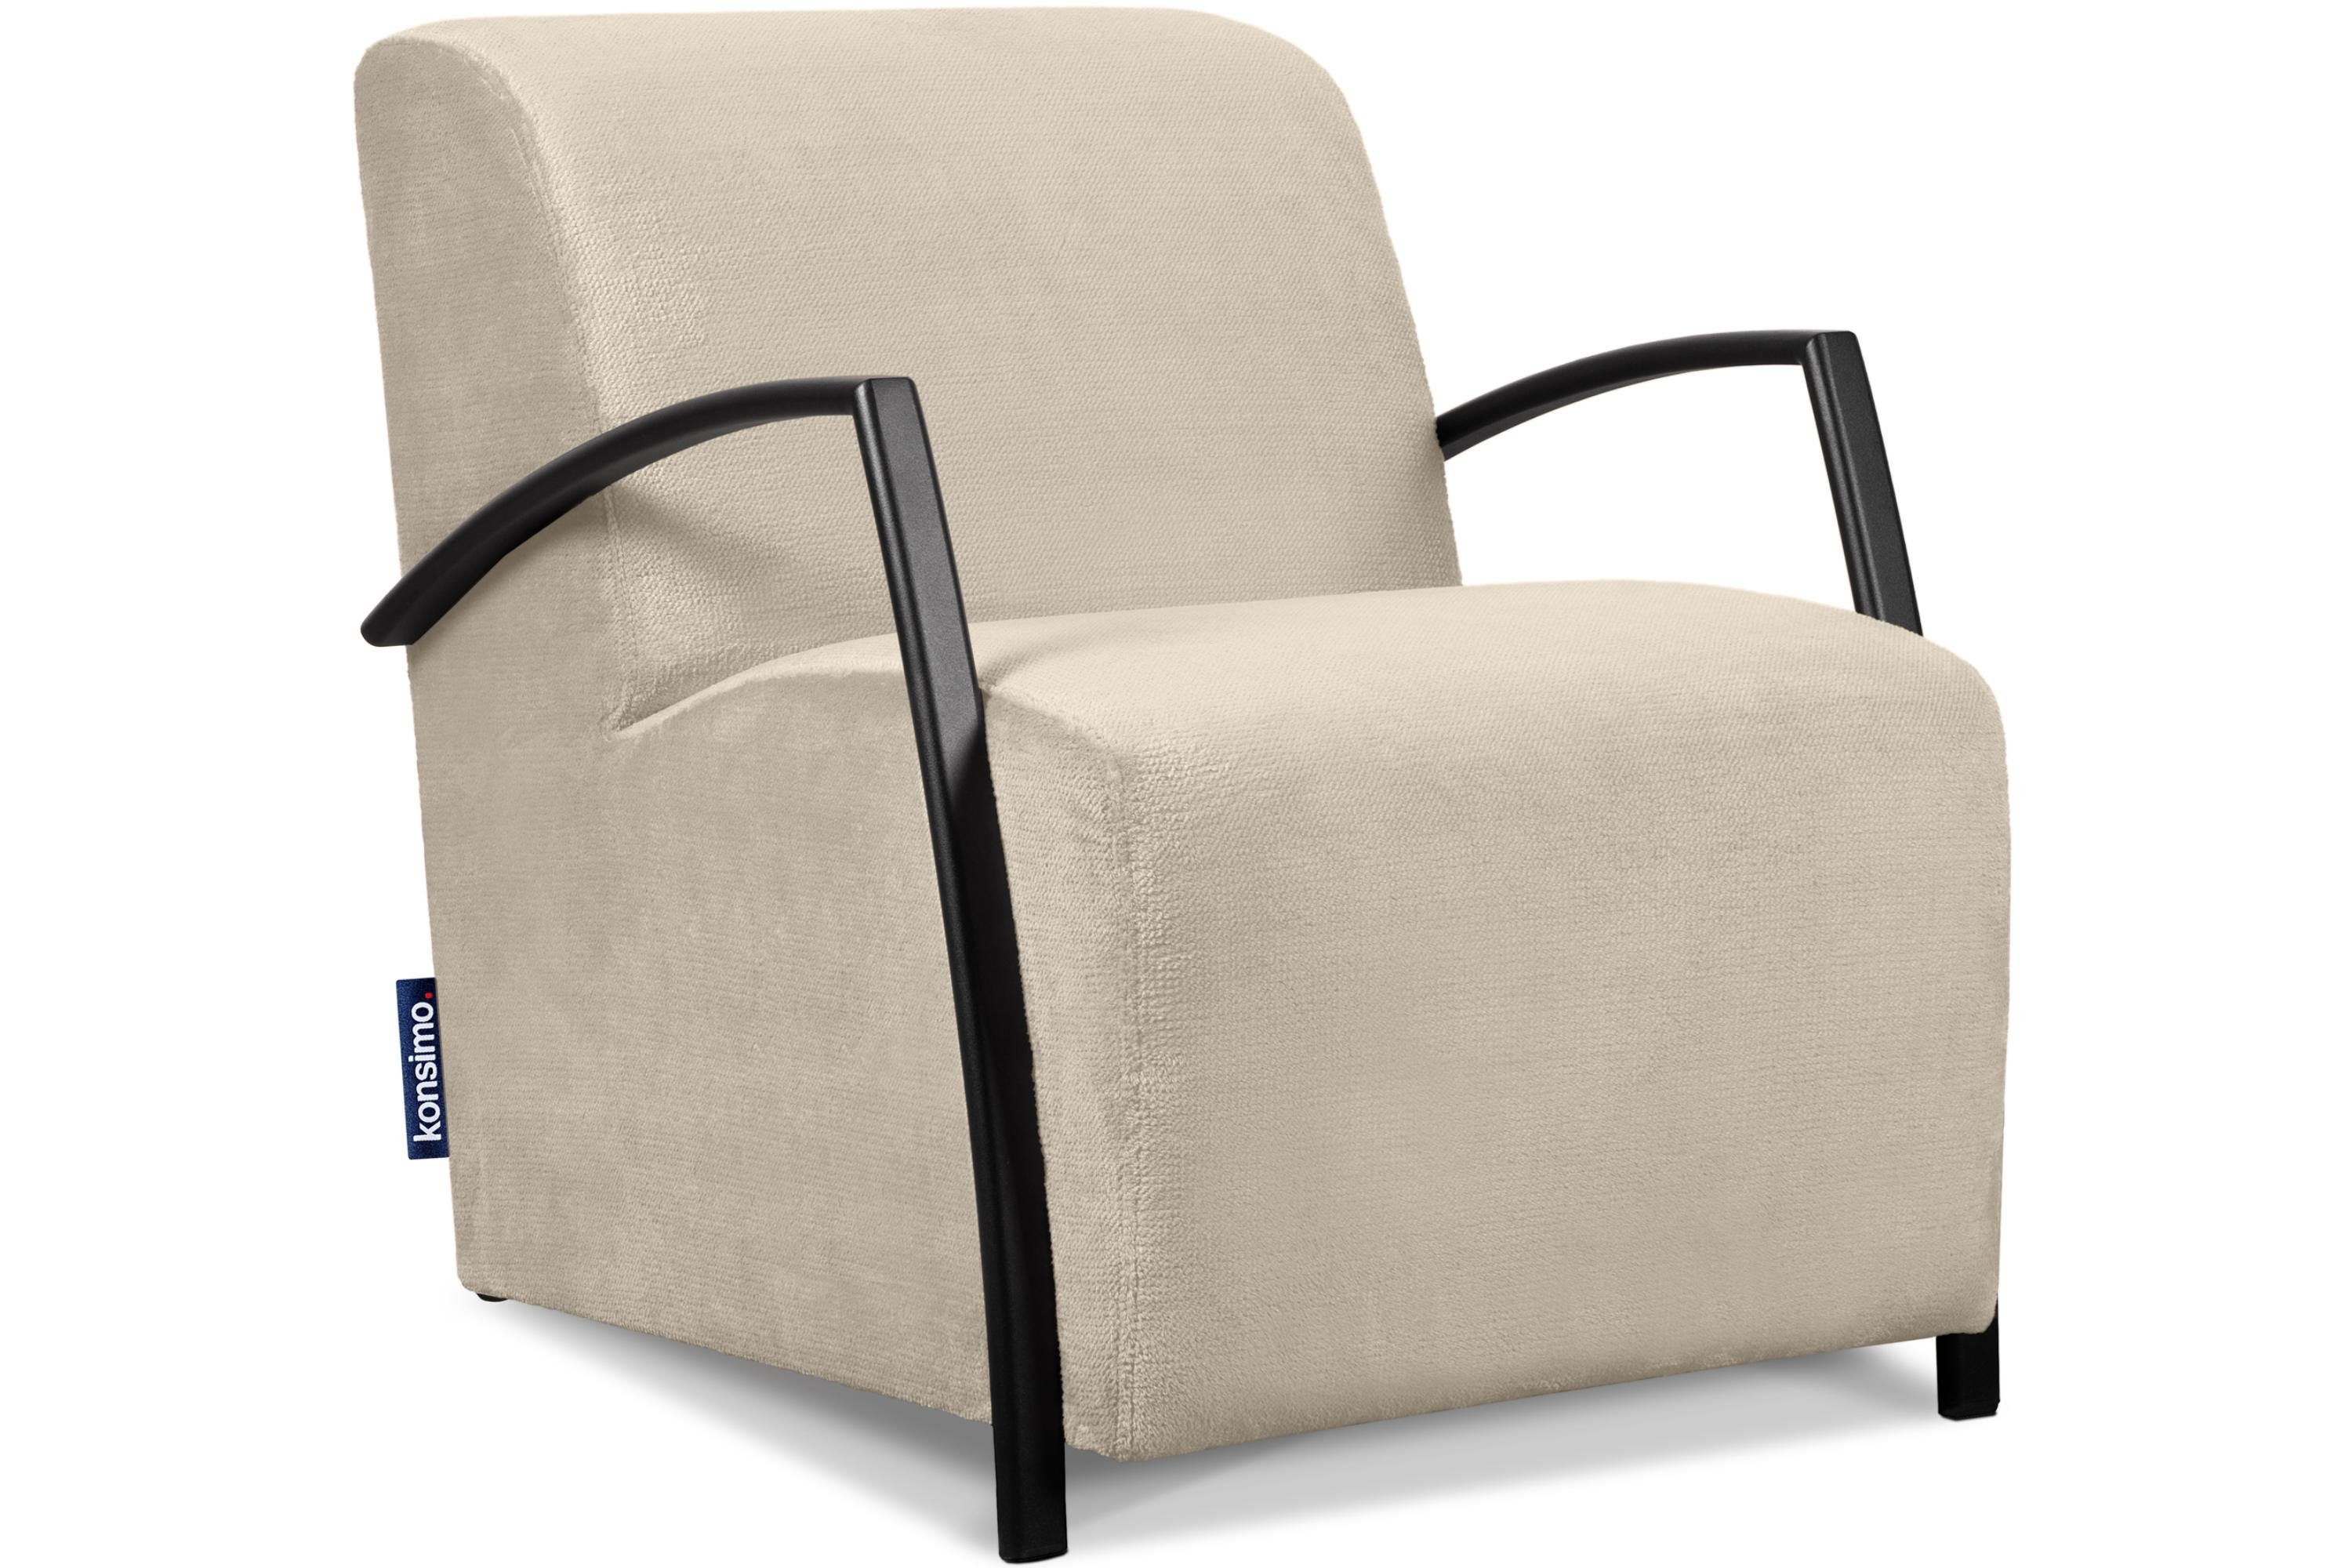 Konsimo Cocktailsessel CARO Sessel, mit gewellter Feder im Sitz, ergonomische Form für bequemes Sitzen cremefarben | cremefarben